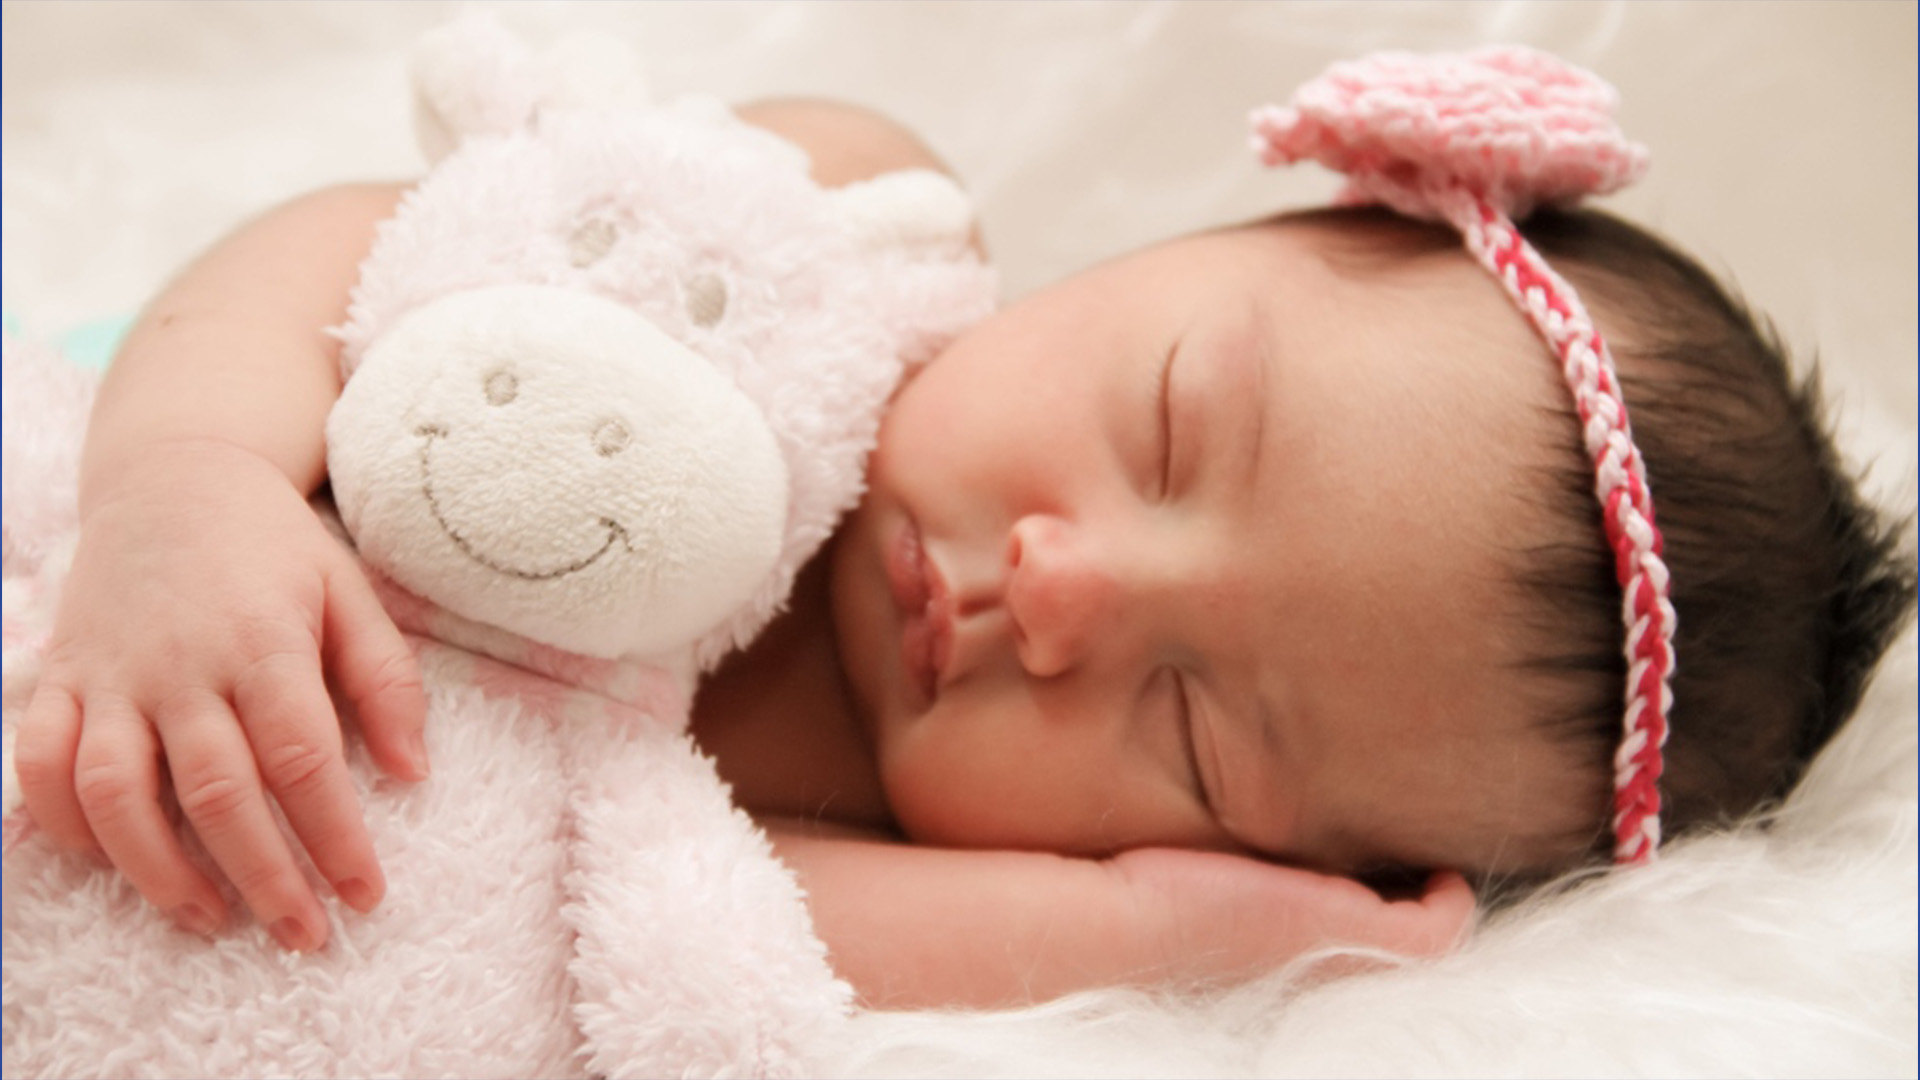 Le ministère de la Santé du Québec prévoit s'assurer que chaque nouveau-né ait accès au Programme québécois de dépistage de la surdité chez les nouveaux-nés (PQDSN) d'ici la fin de l'année.